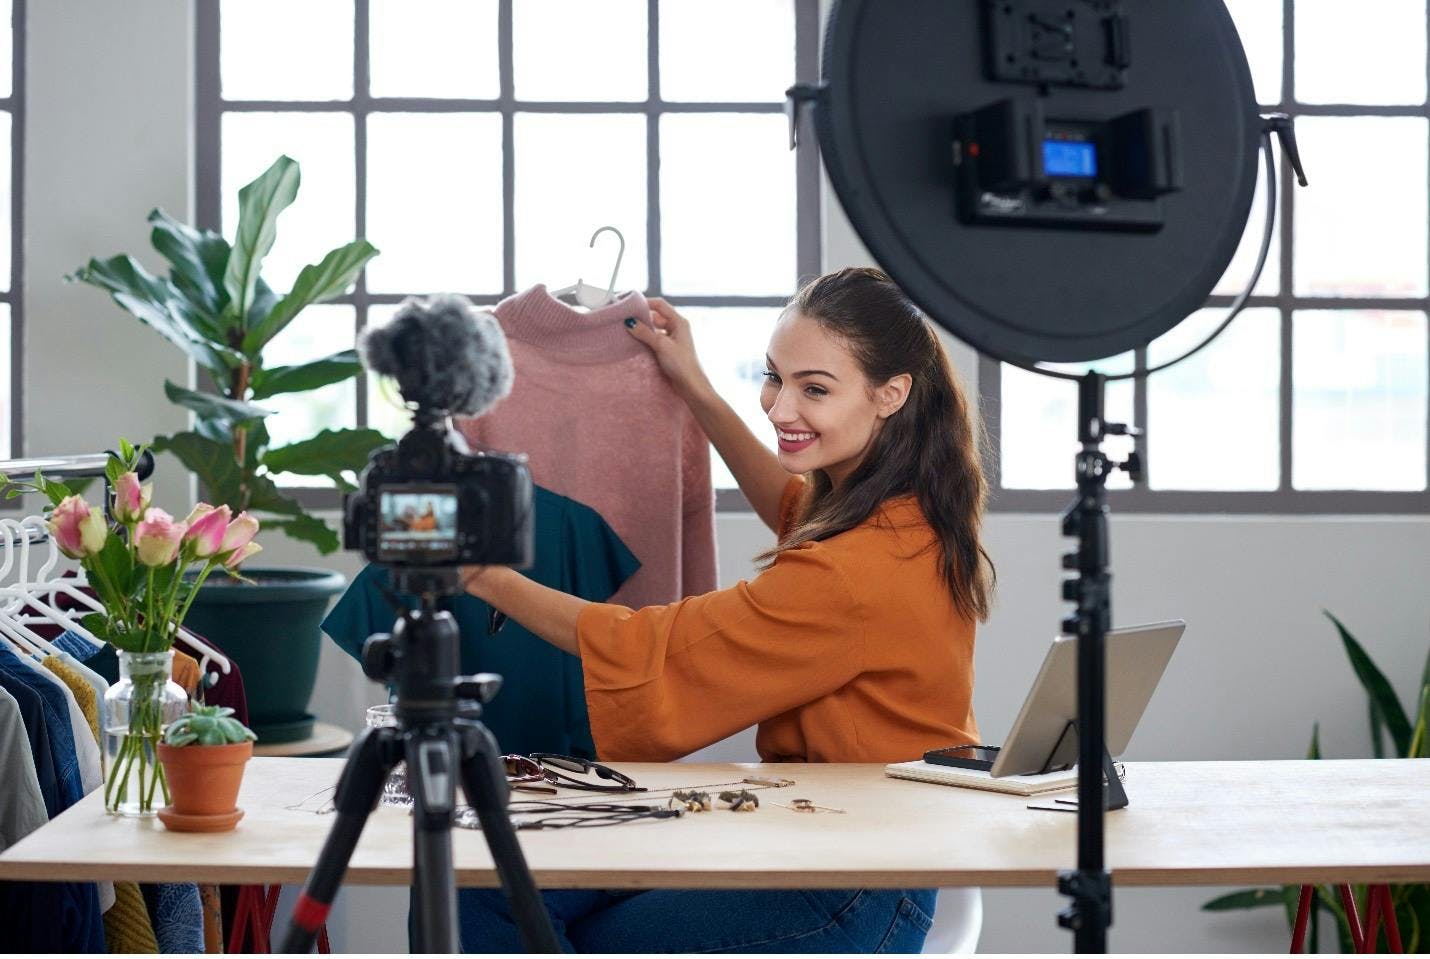 Influencer die een video opneemt waarin ze kleding promoot om merkbekendheid en pers te creëren voor een merk